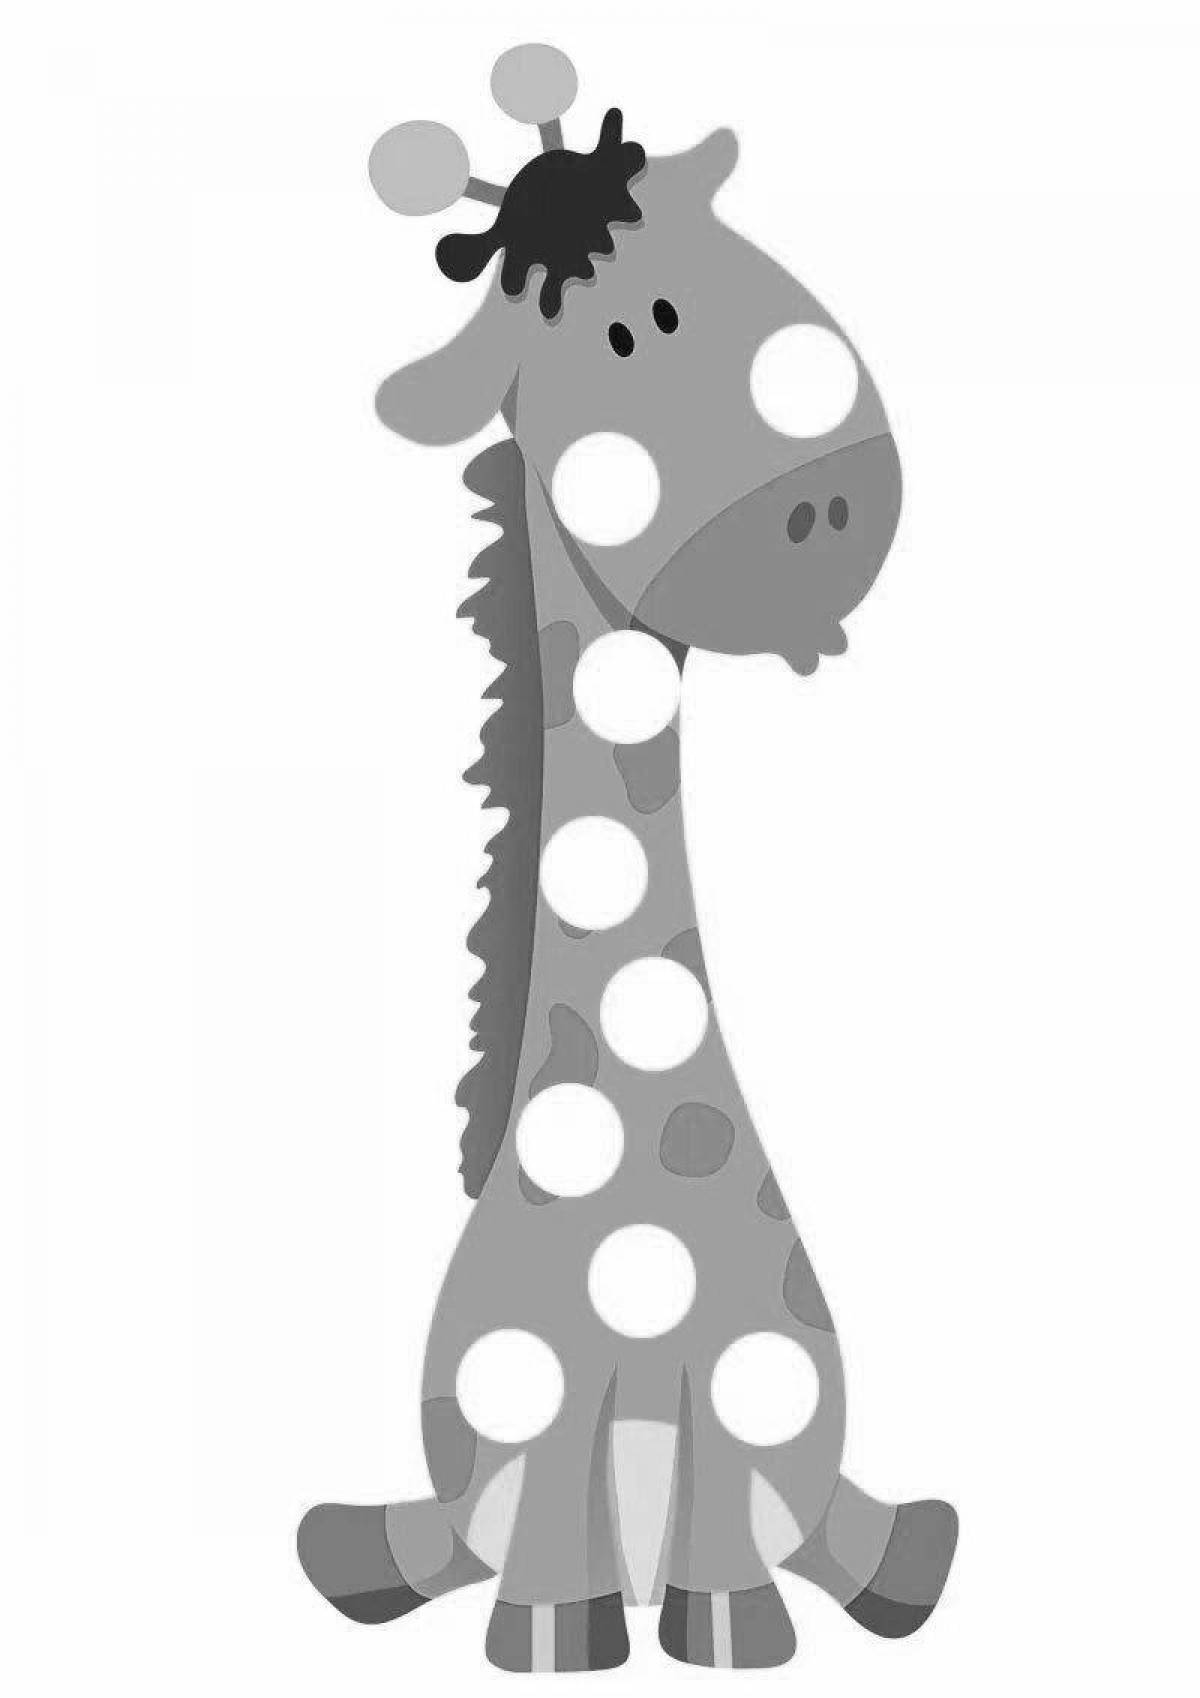 Luminous giraffe without spots for children